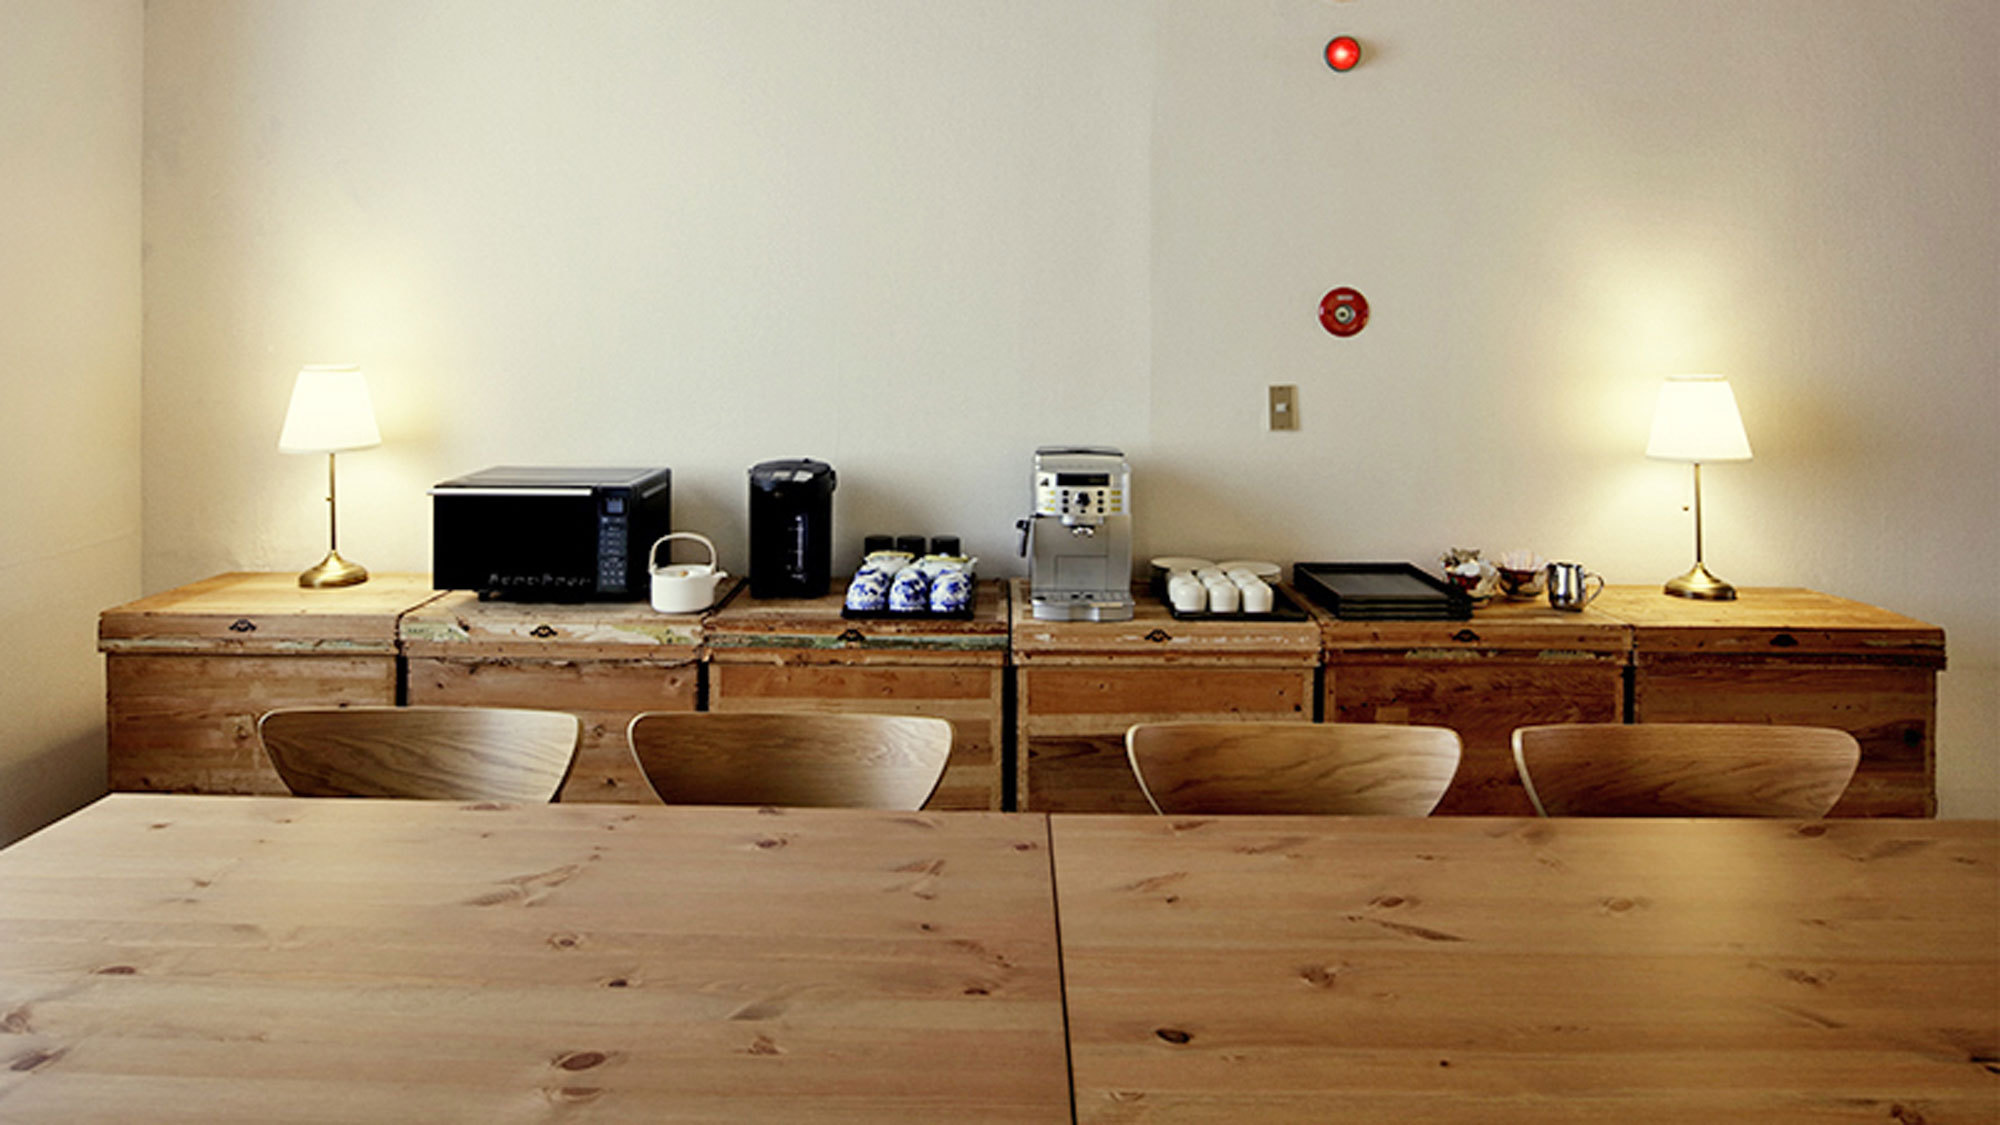 【カフェコーナー】コーヒーマシン・電気ポット・電子レンジ・おしぼりを置いております。